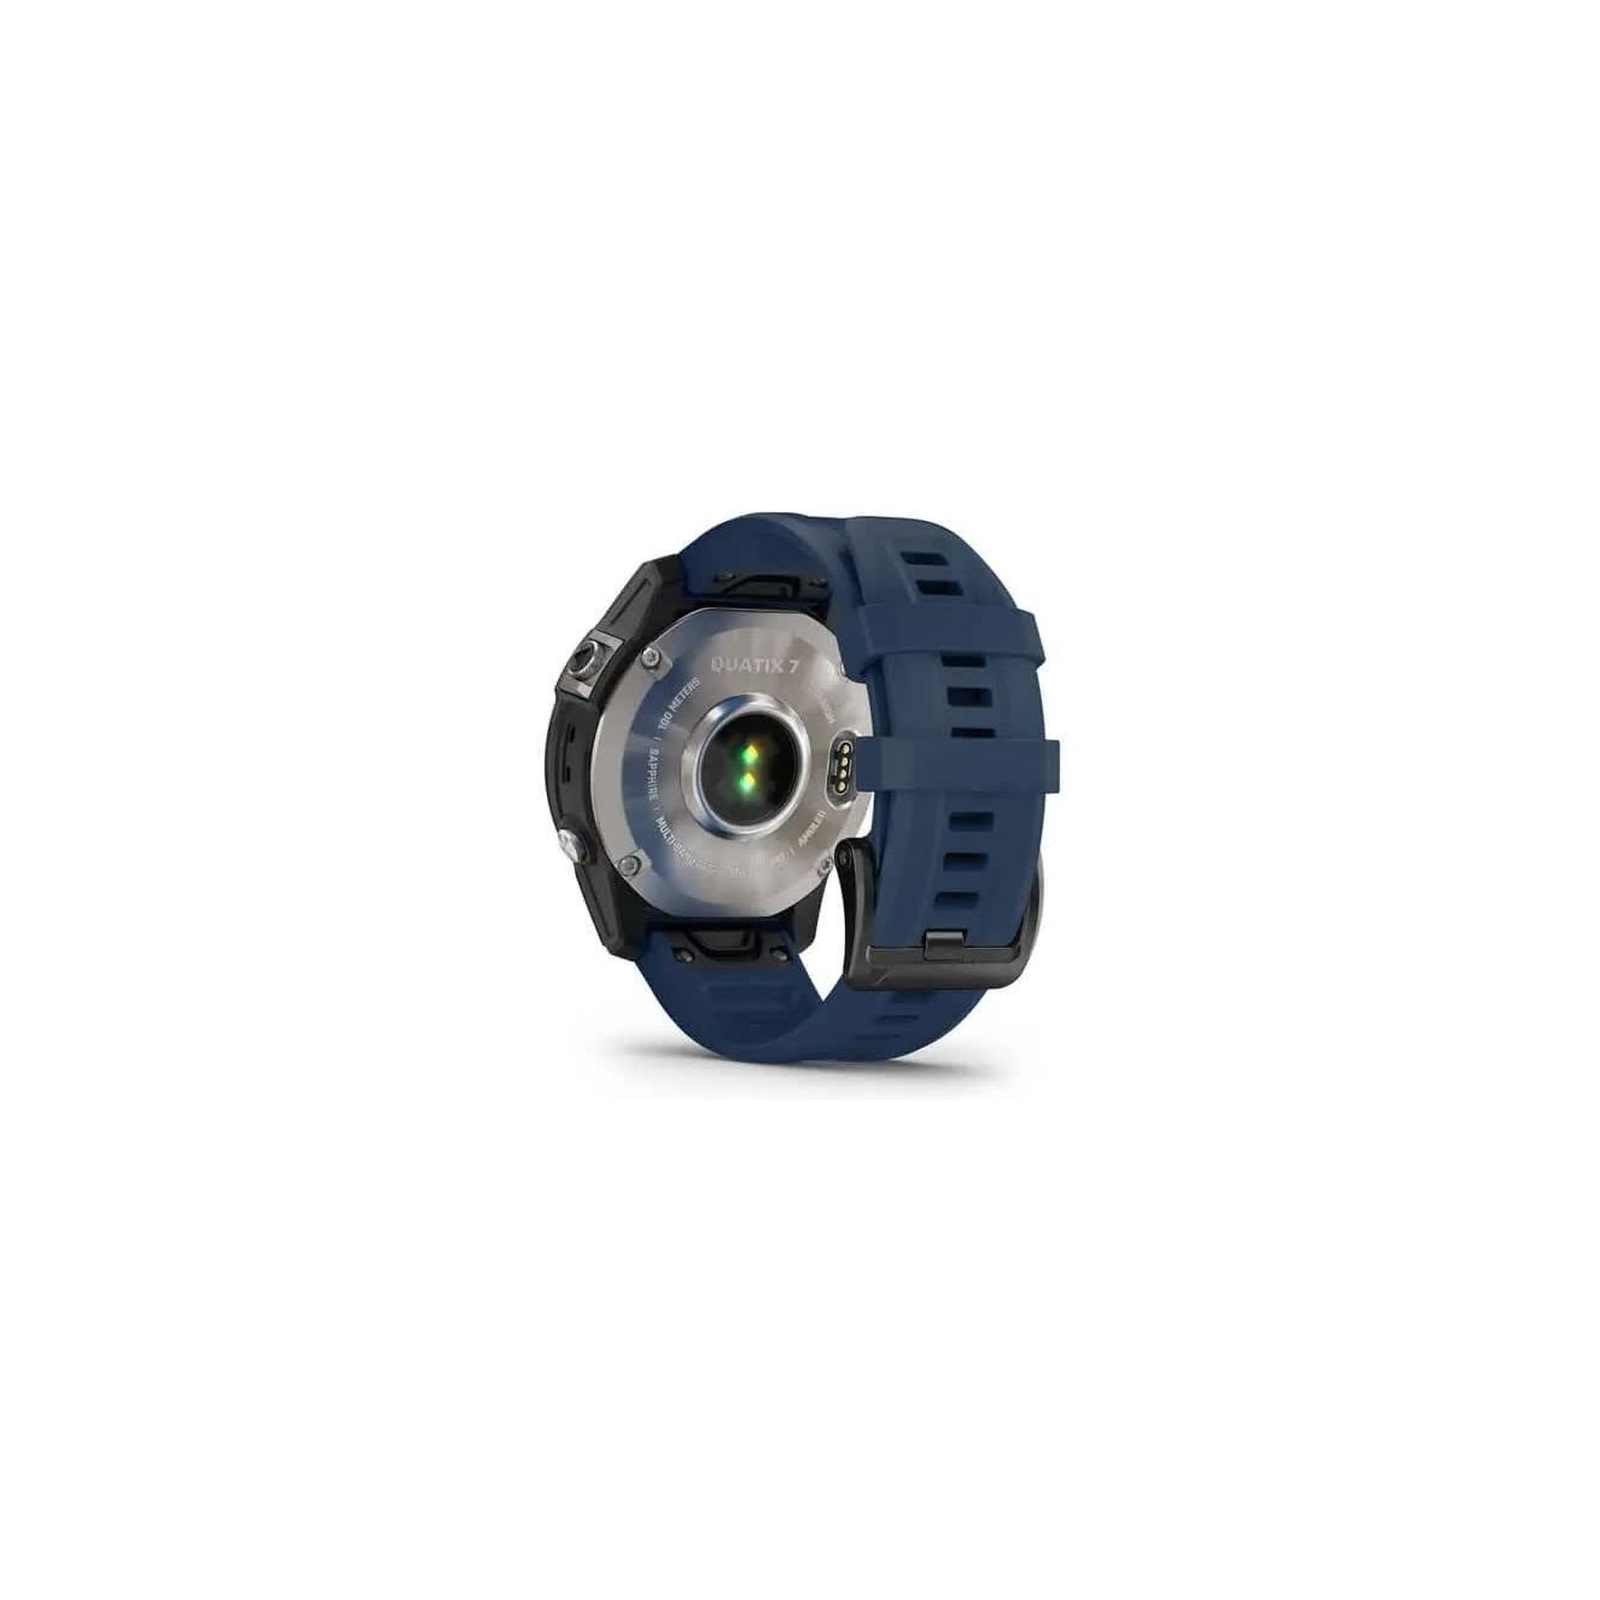 Смарт-часы Garmin quatix 7, Sapphire, AMOLED (010-02582-61) изображение 6